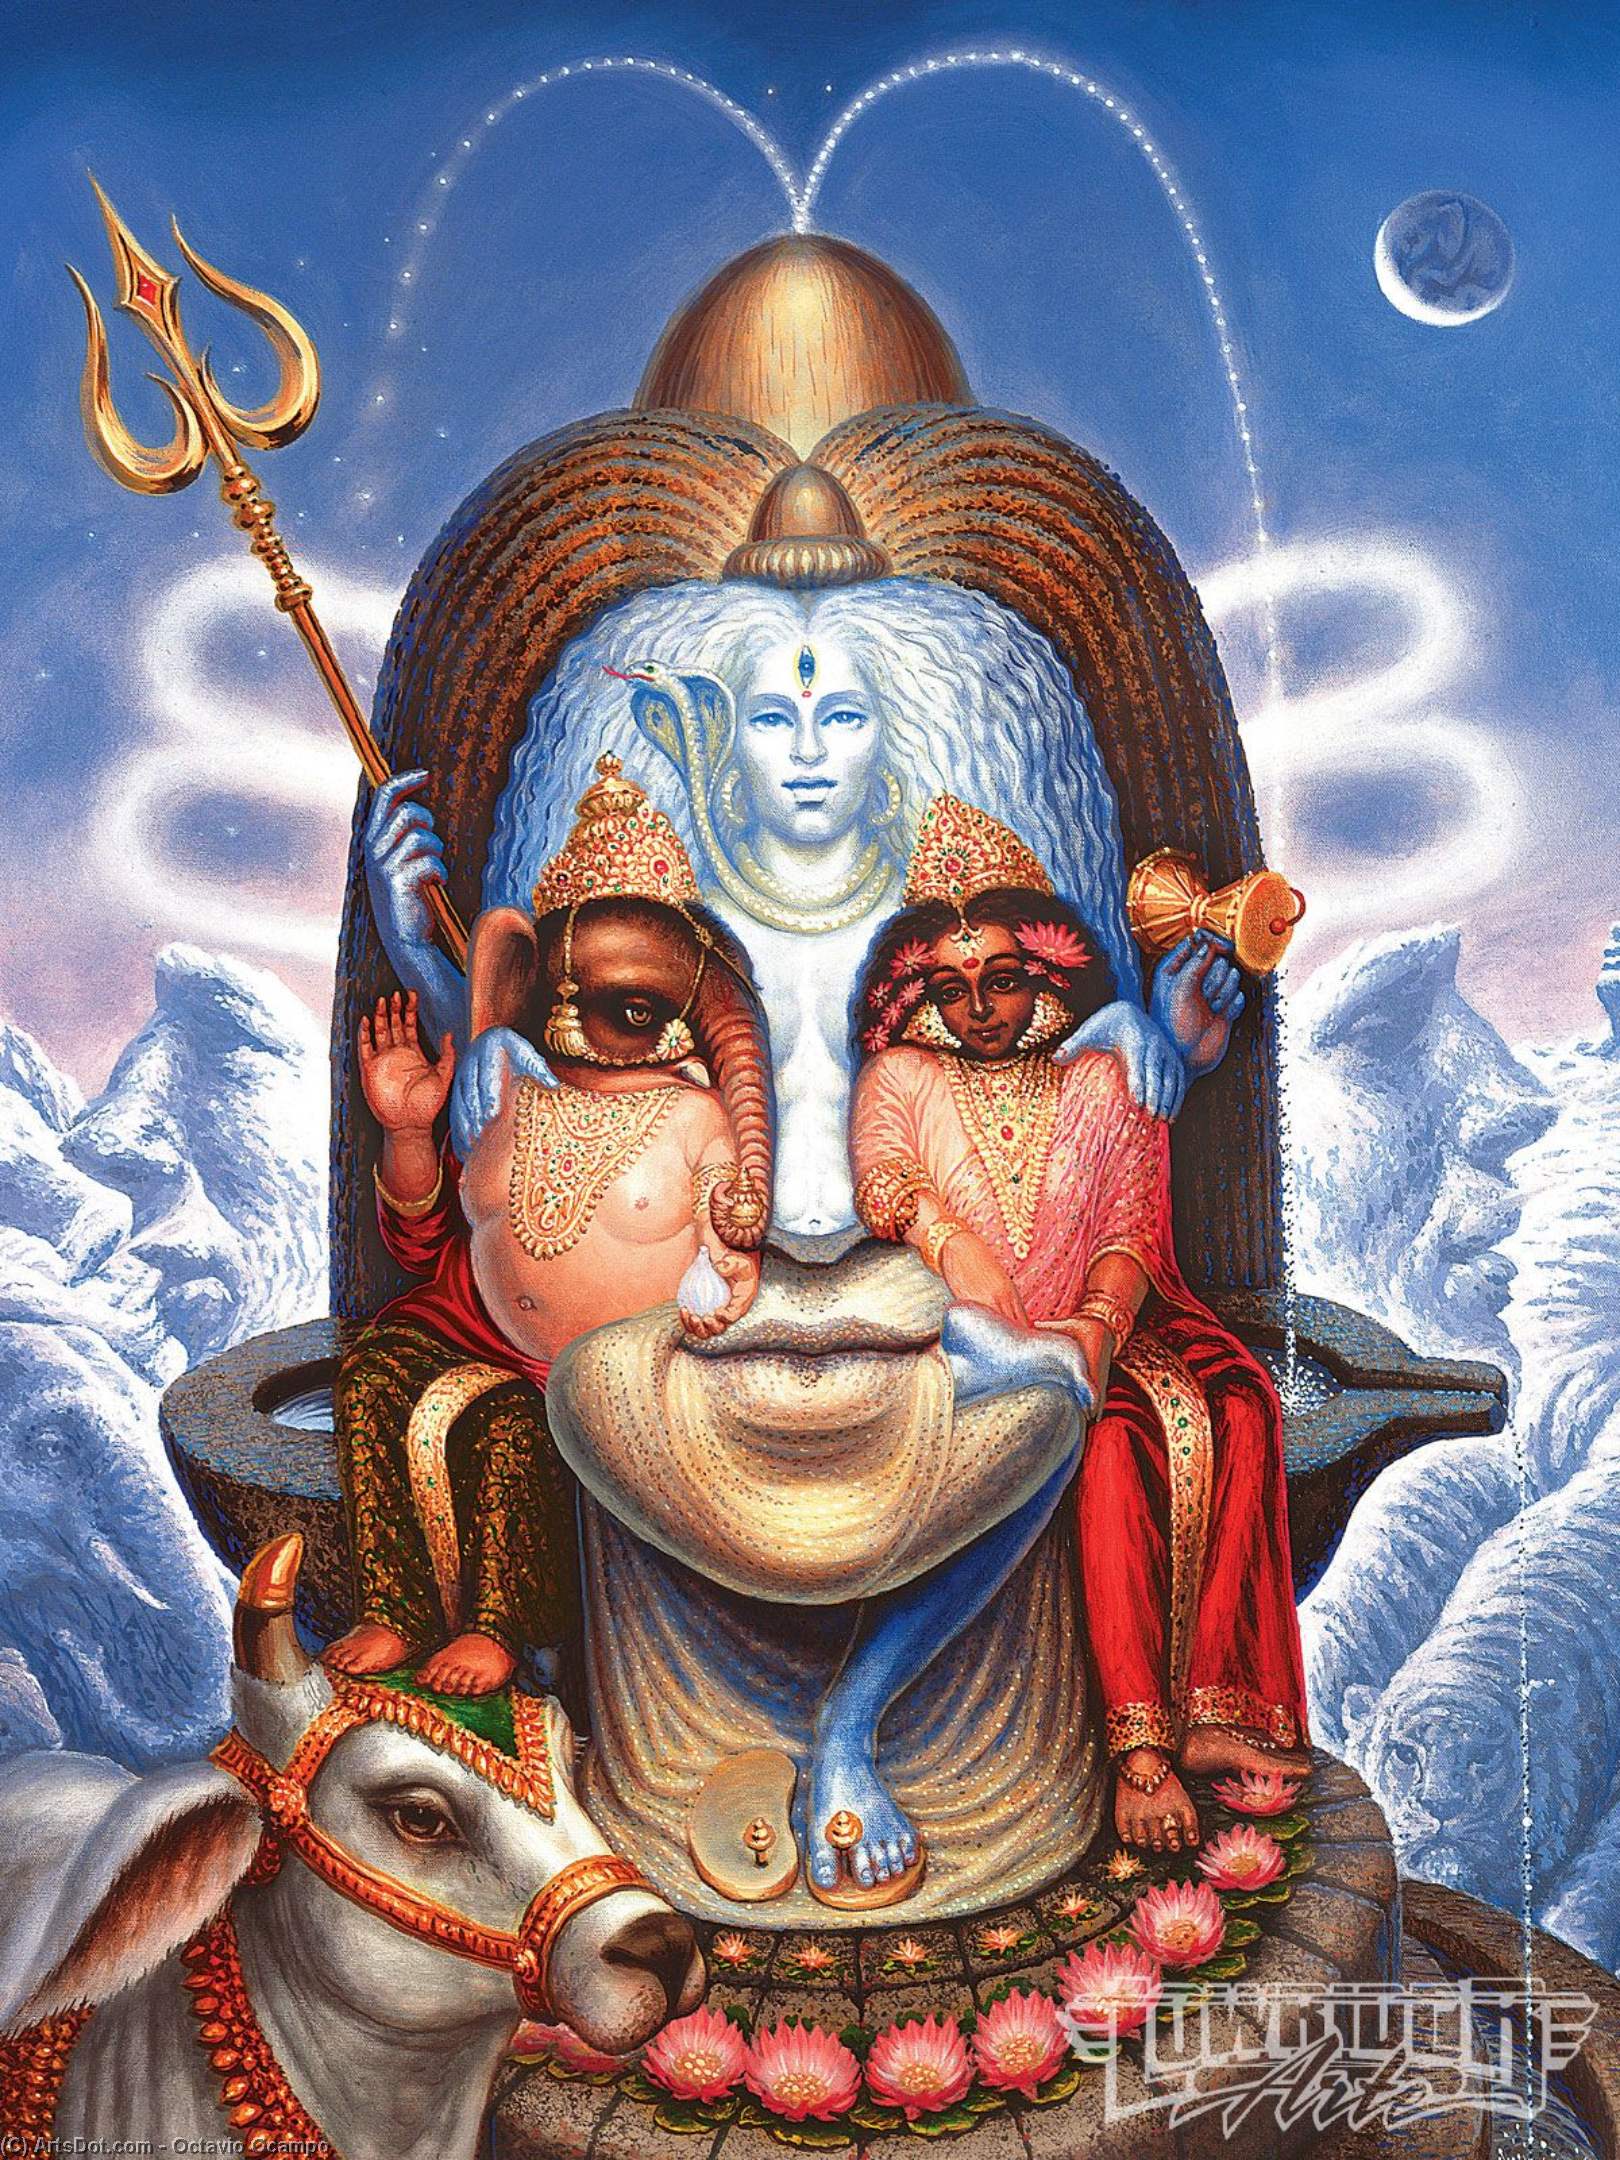 WikiOO.org - Güzel Sanatlar Ansiklopedisi - Resim, Resimler Octavio Ocampo - Woman and Mountains Shiva